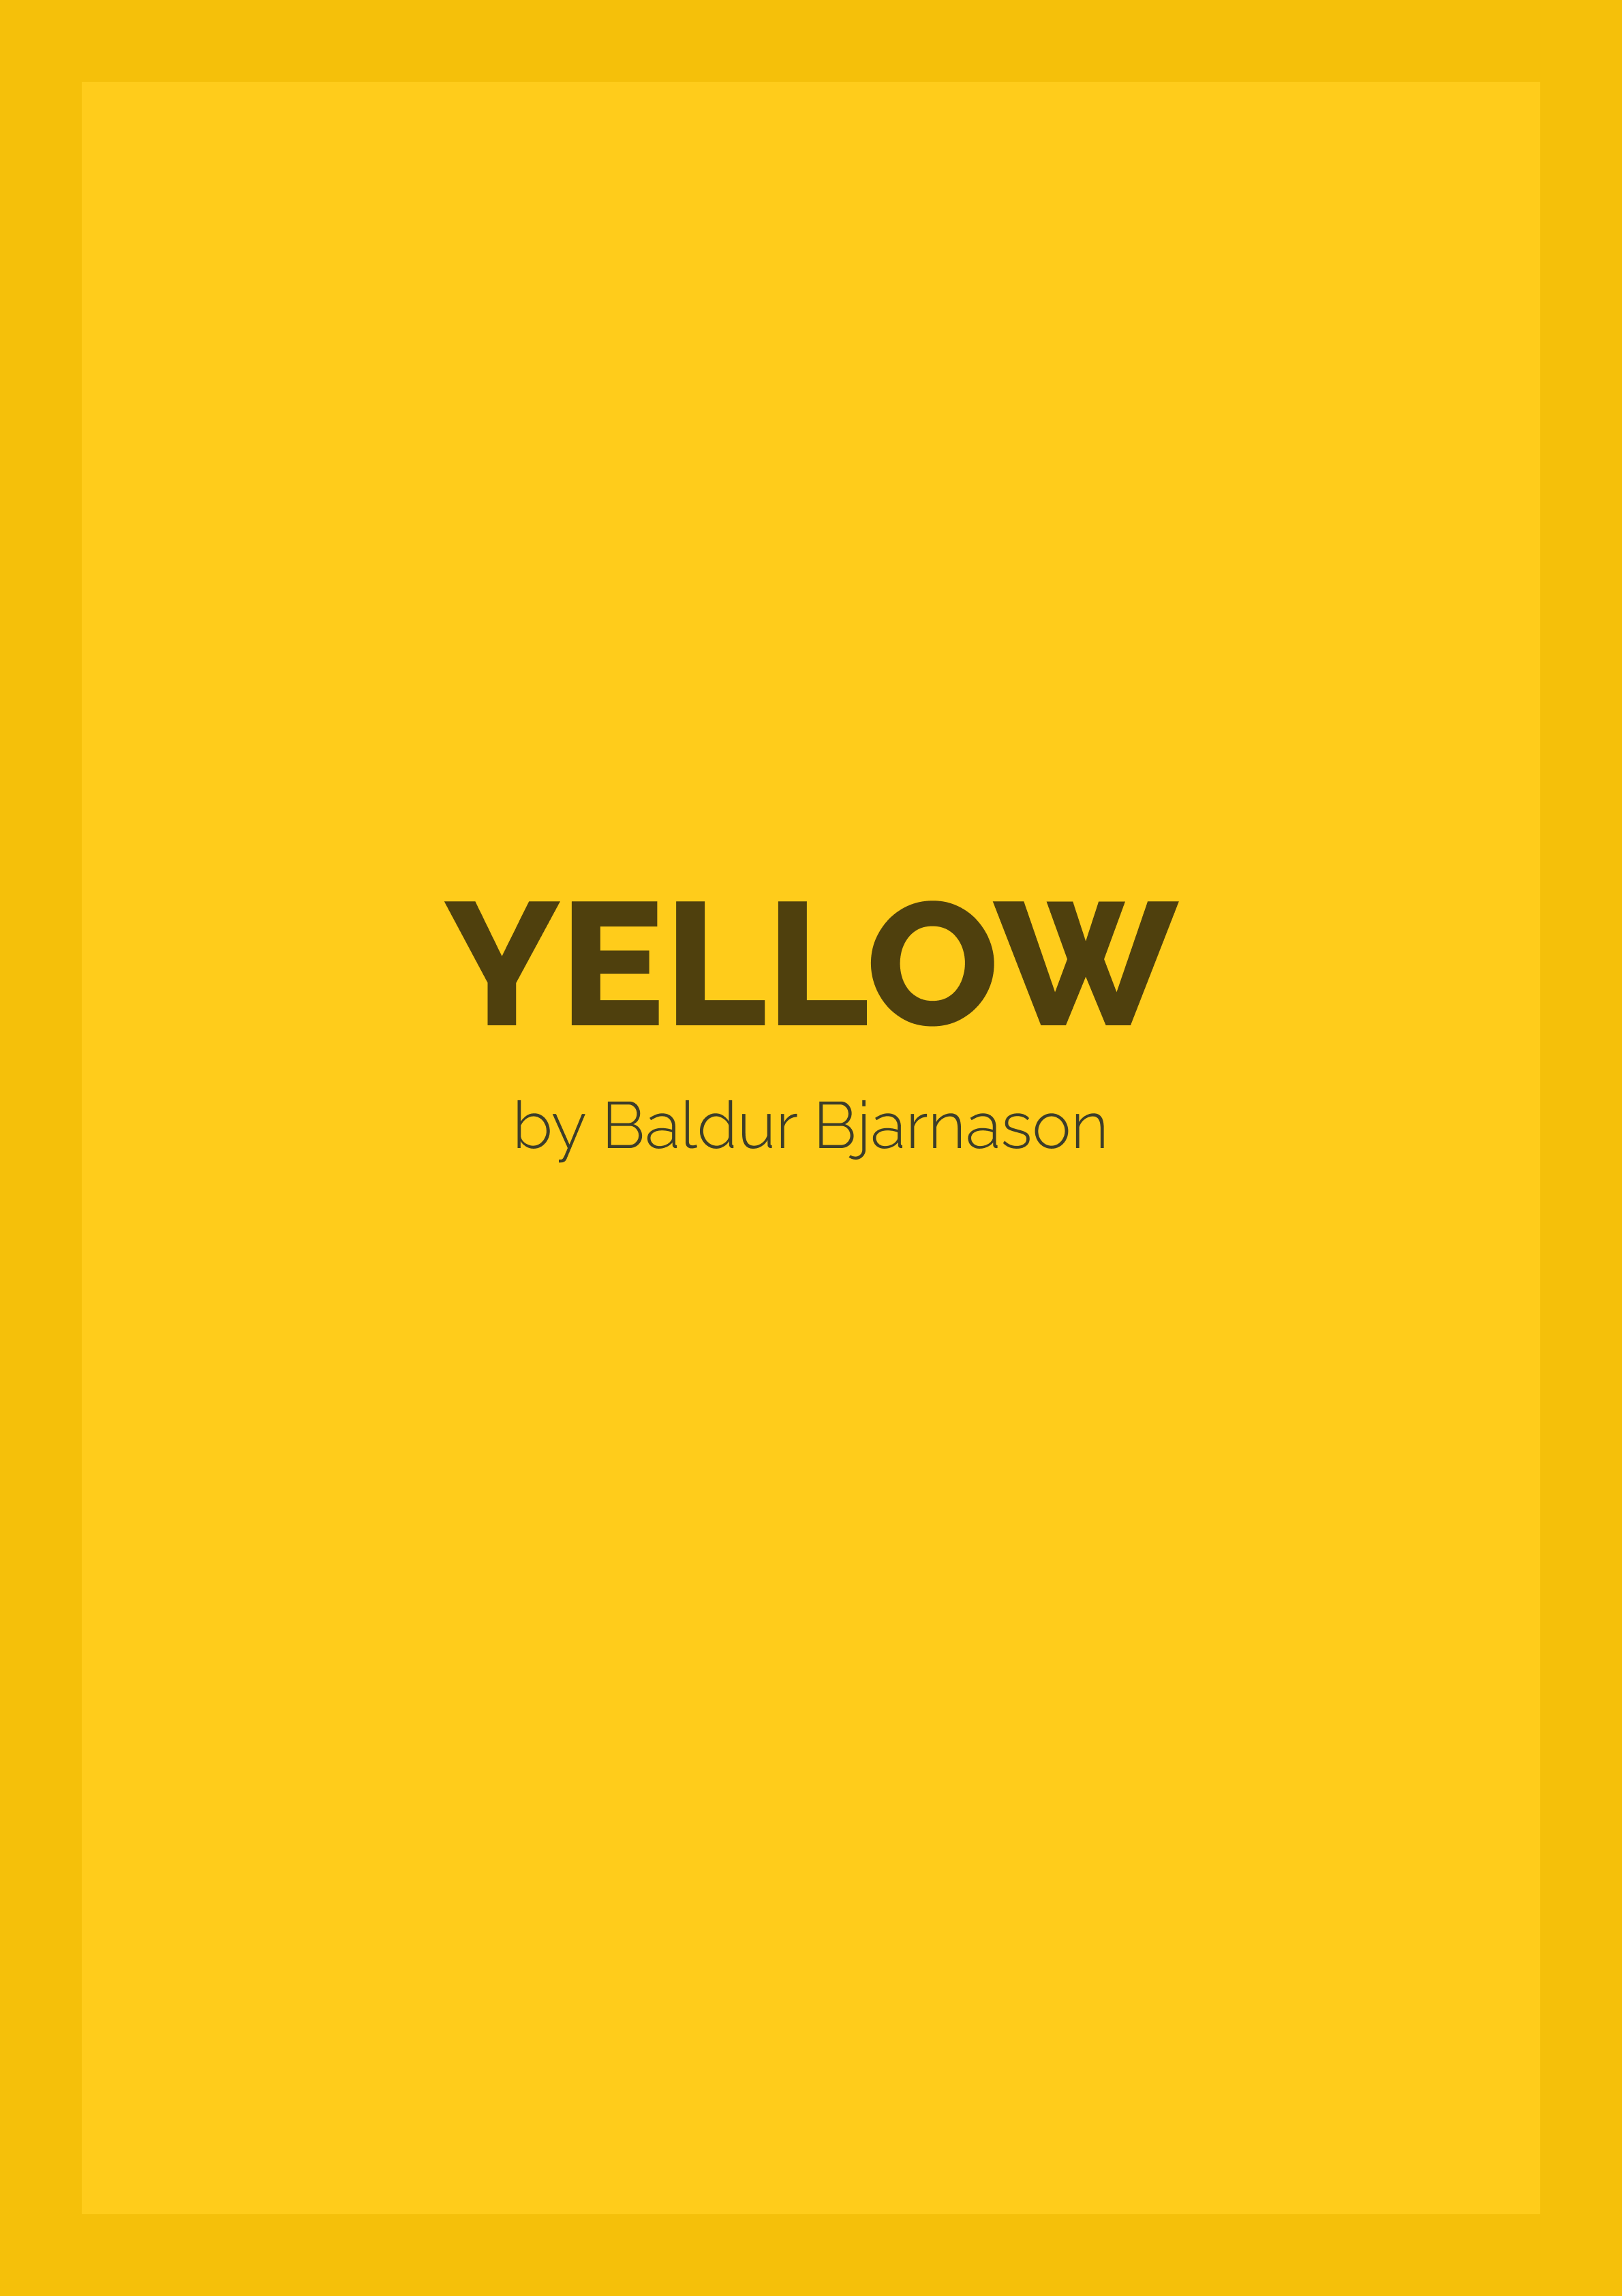 Yellow by Baldur Bjarnason